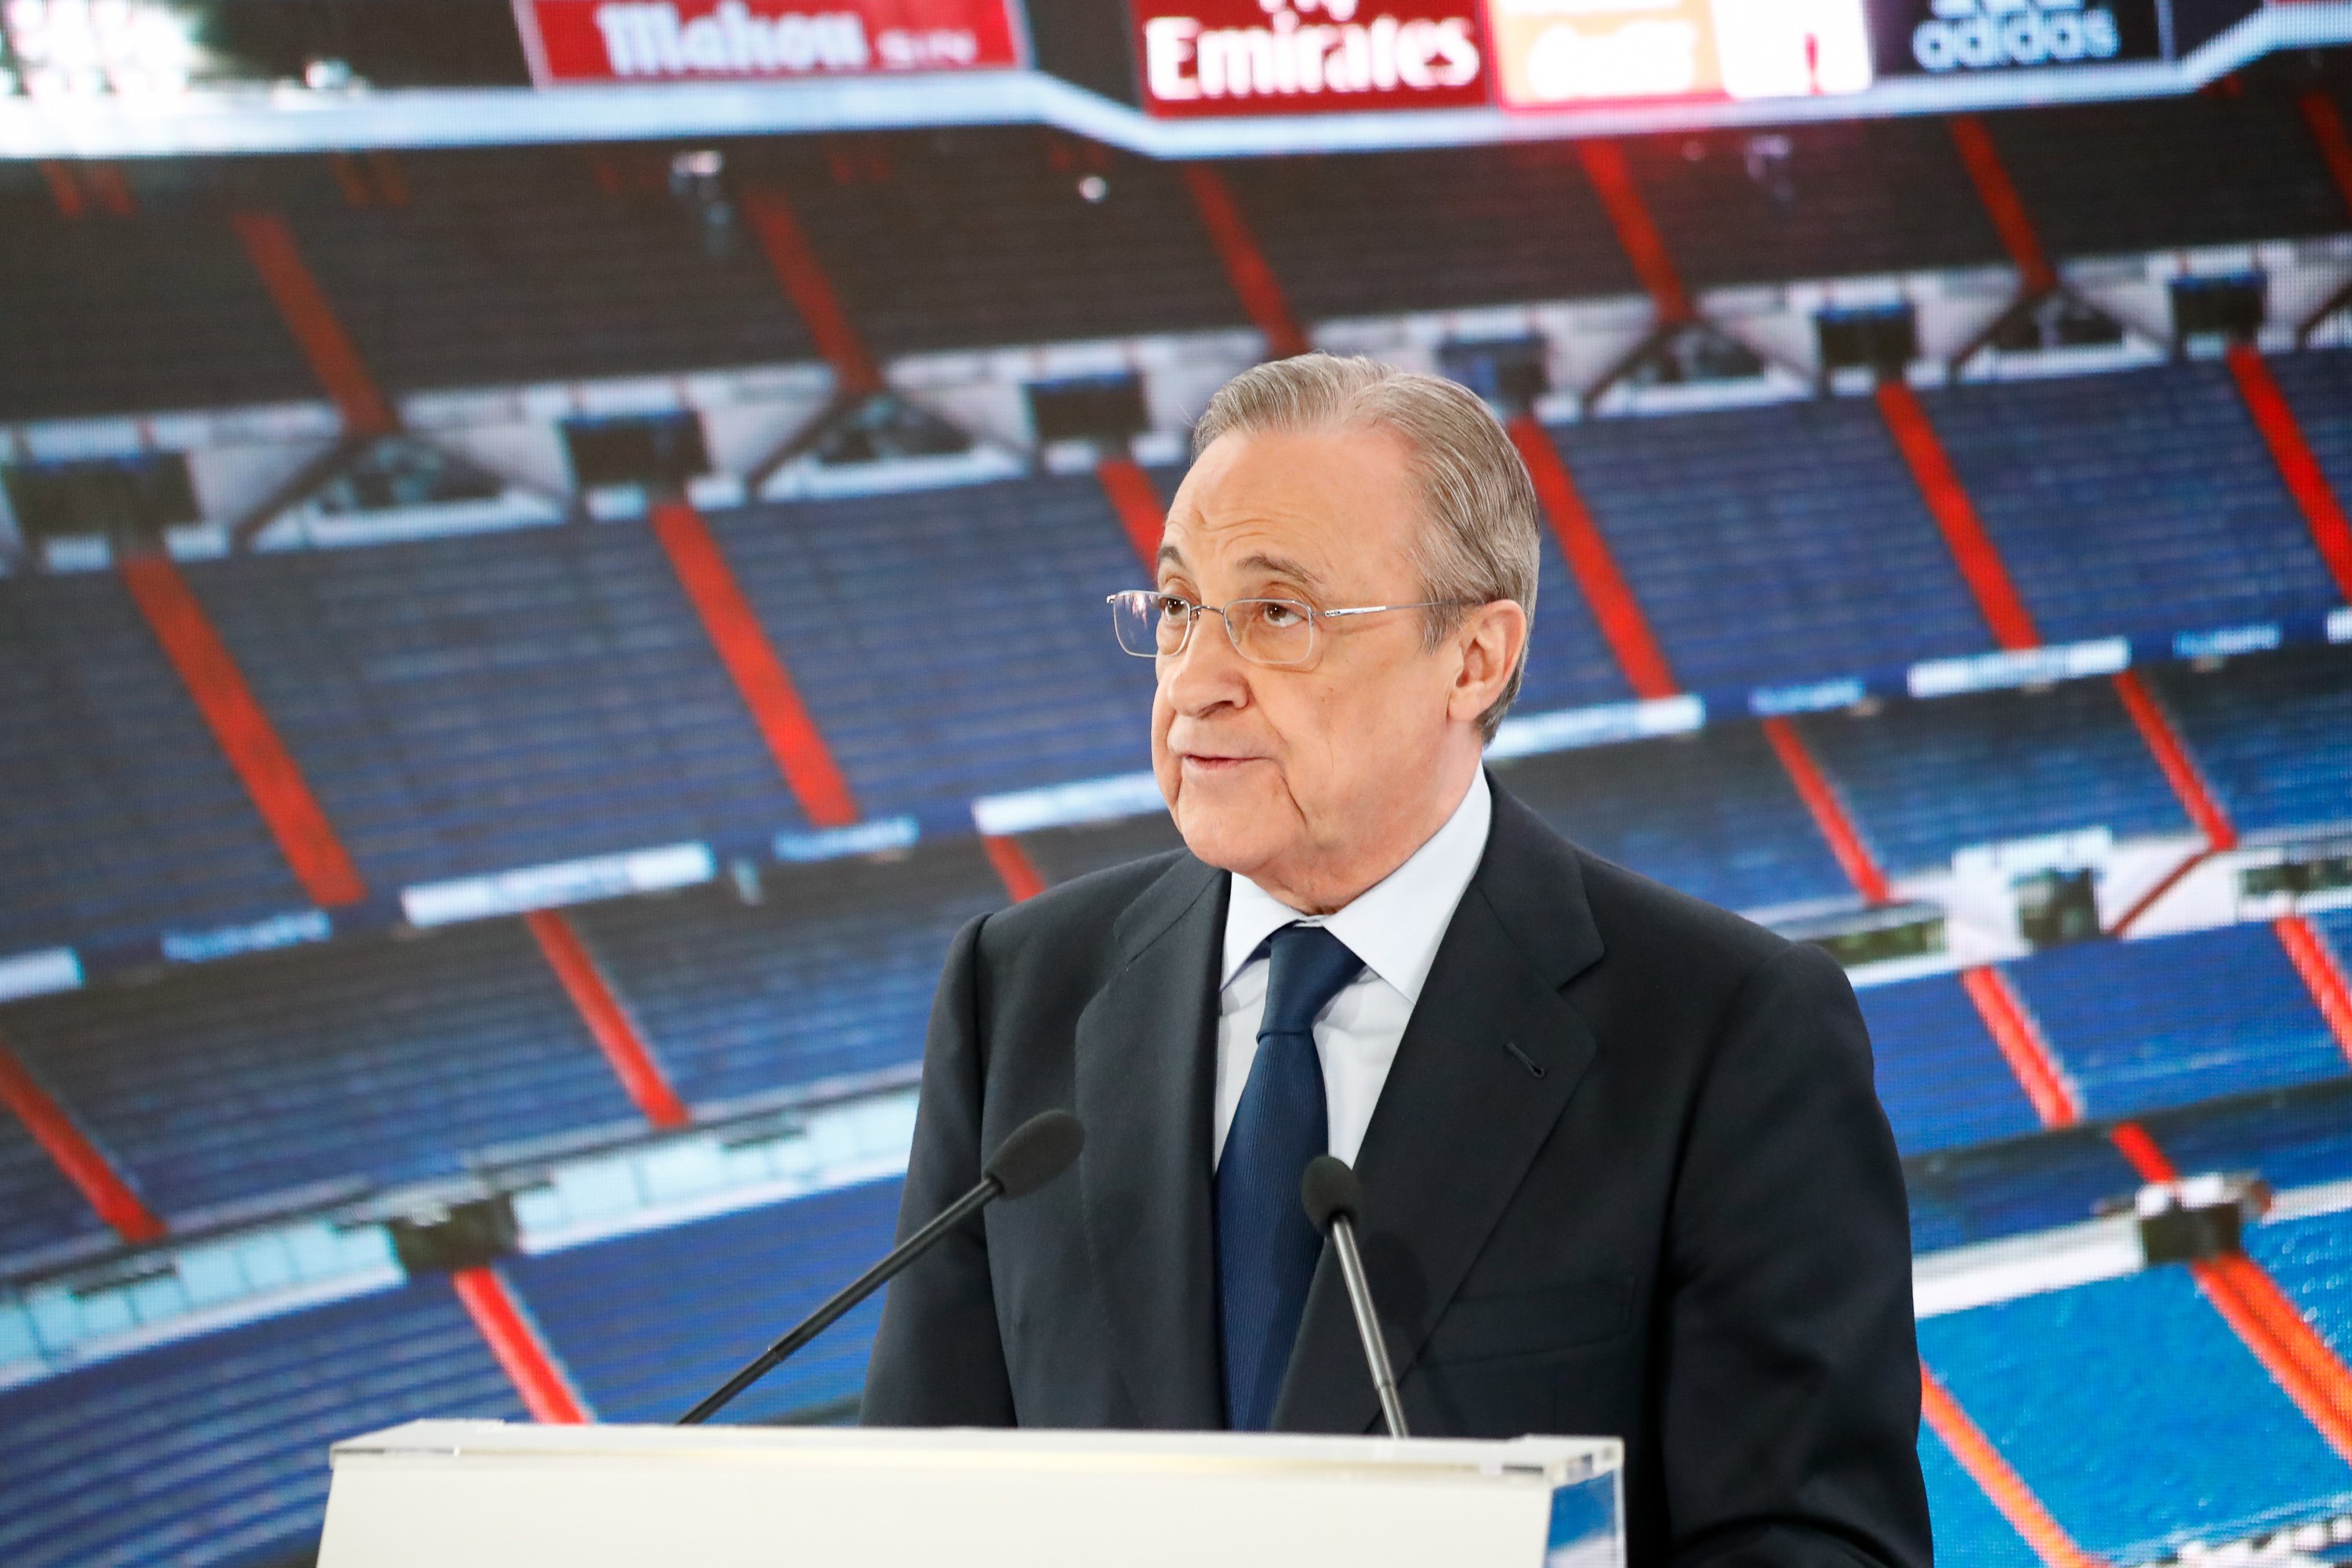 20 millones para venir ahora al Real Madrid es la operación que Florentino Pérez ha puesto en marcha en Moscú